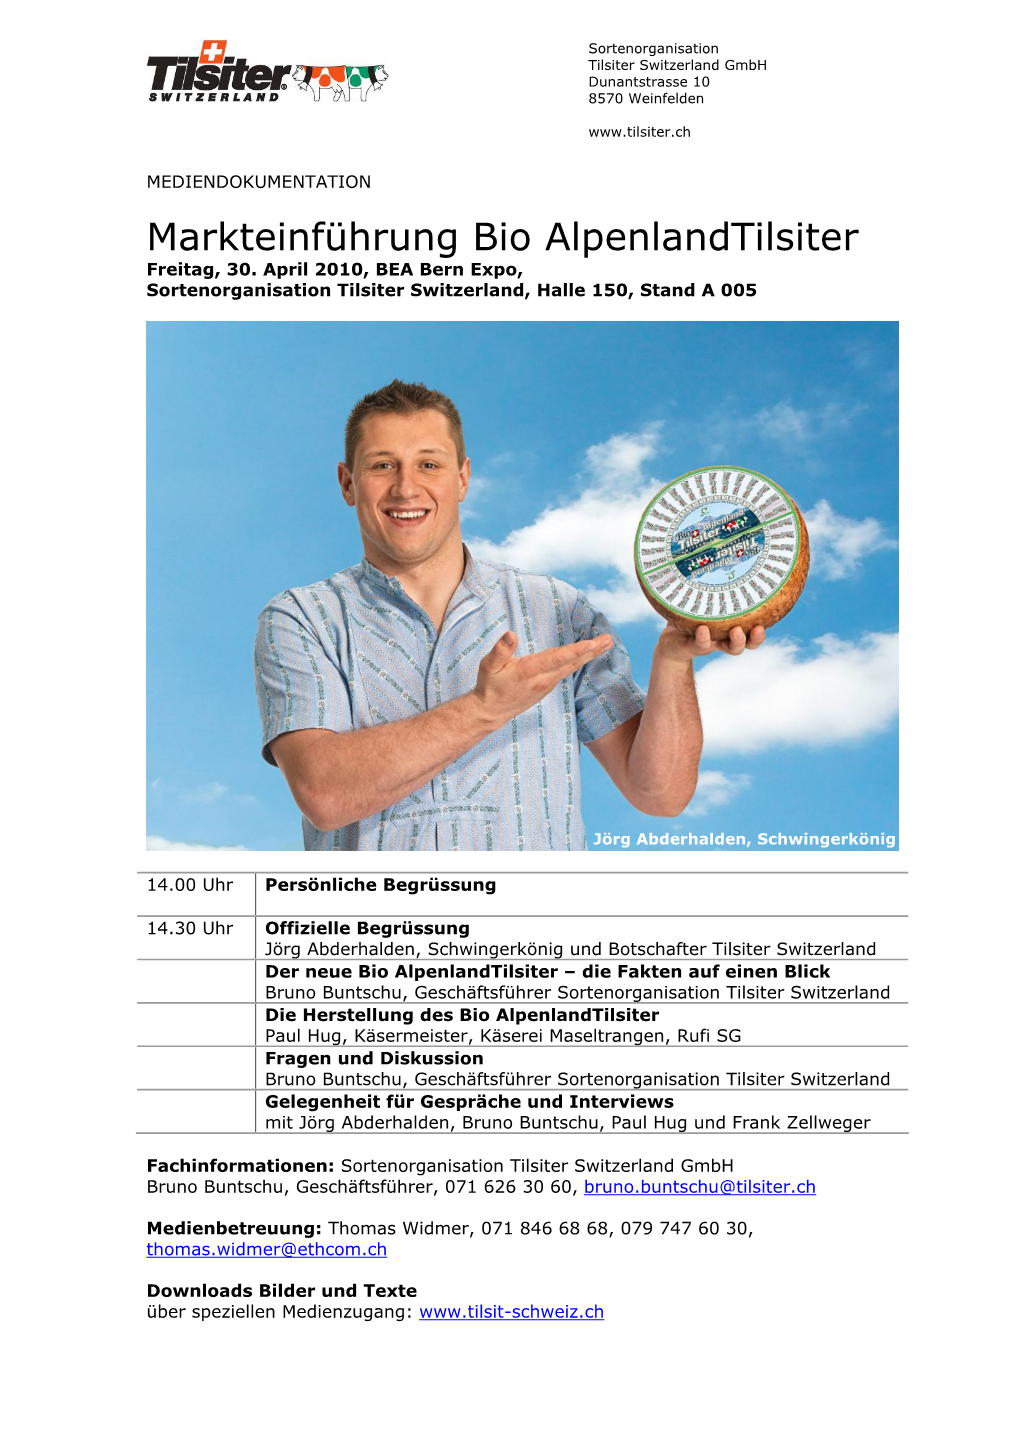 Markteinführung Bio Alpenlandtilsiter Freitag, 30